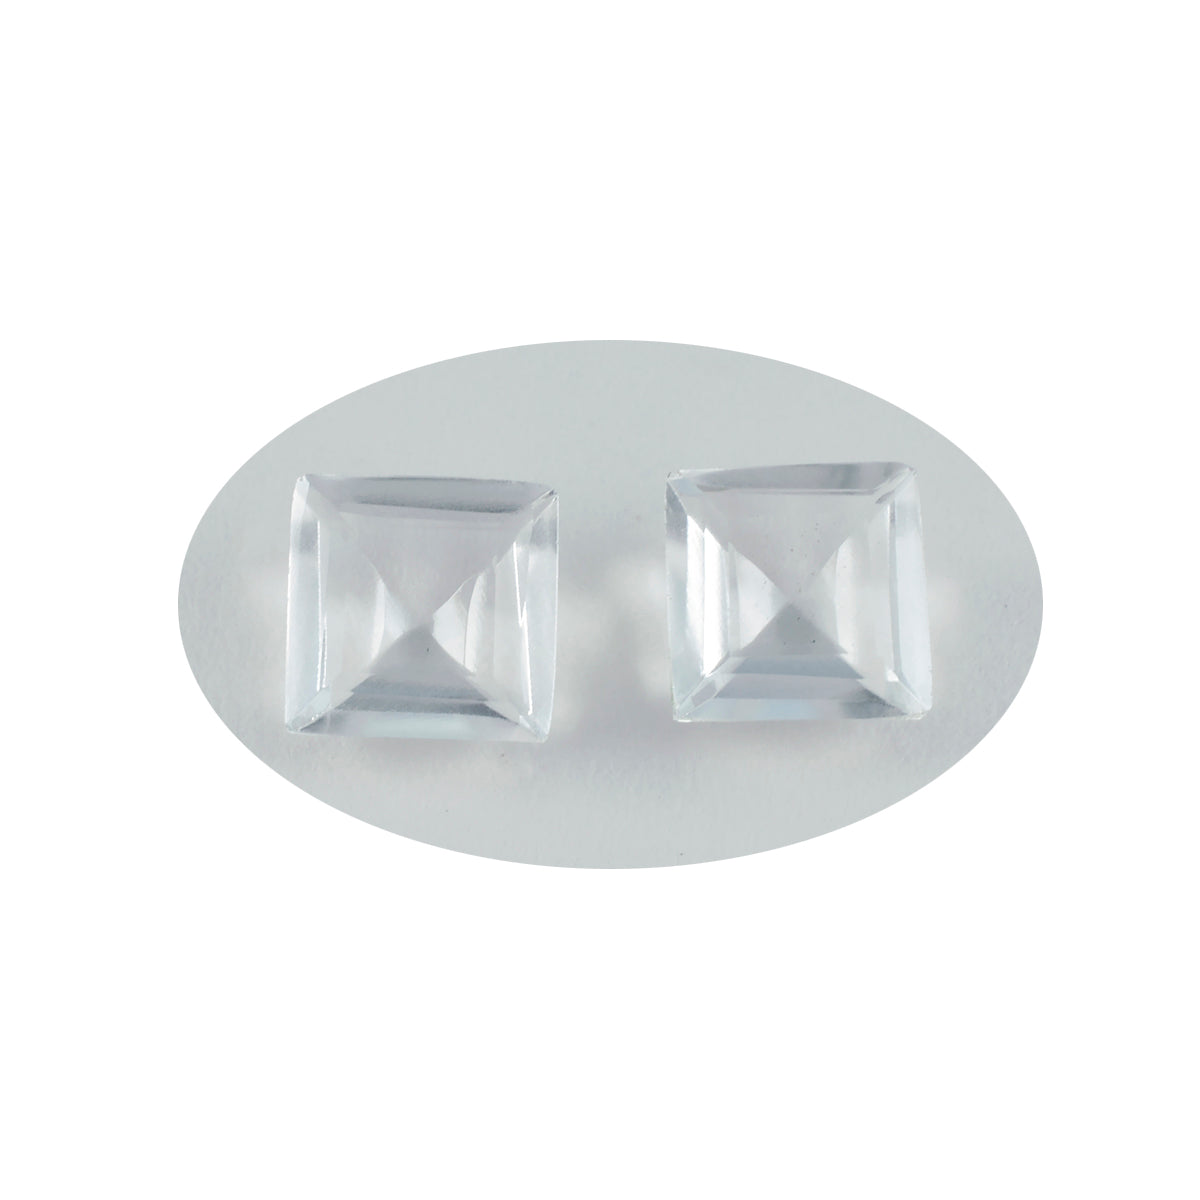 riyogems 1 шт., белый кристалл кварца, граненый 15x15 мм, квадратная форма, фантастическое качество, свободный драгоценный камень